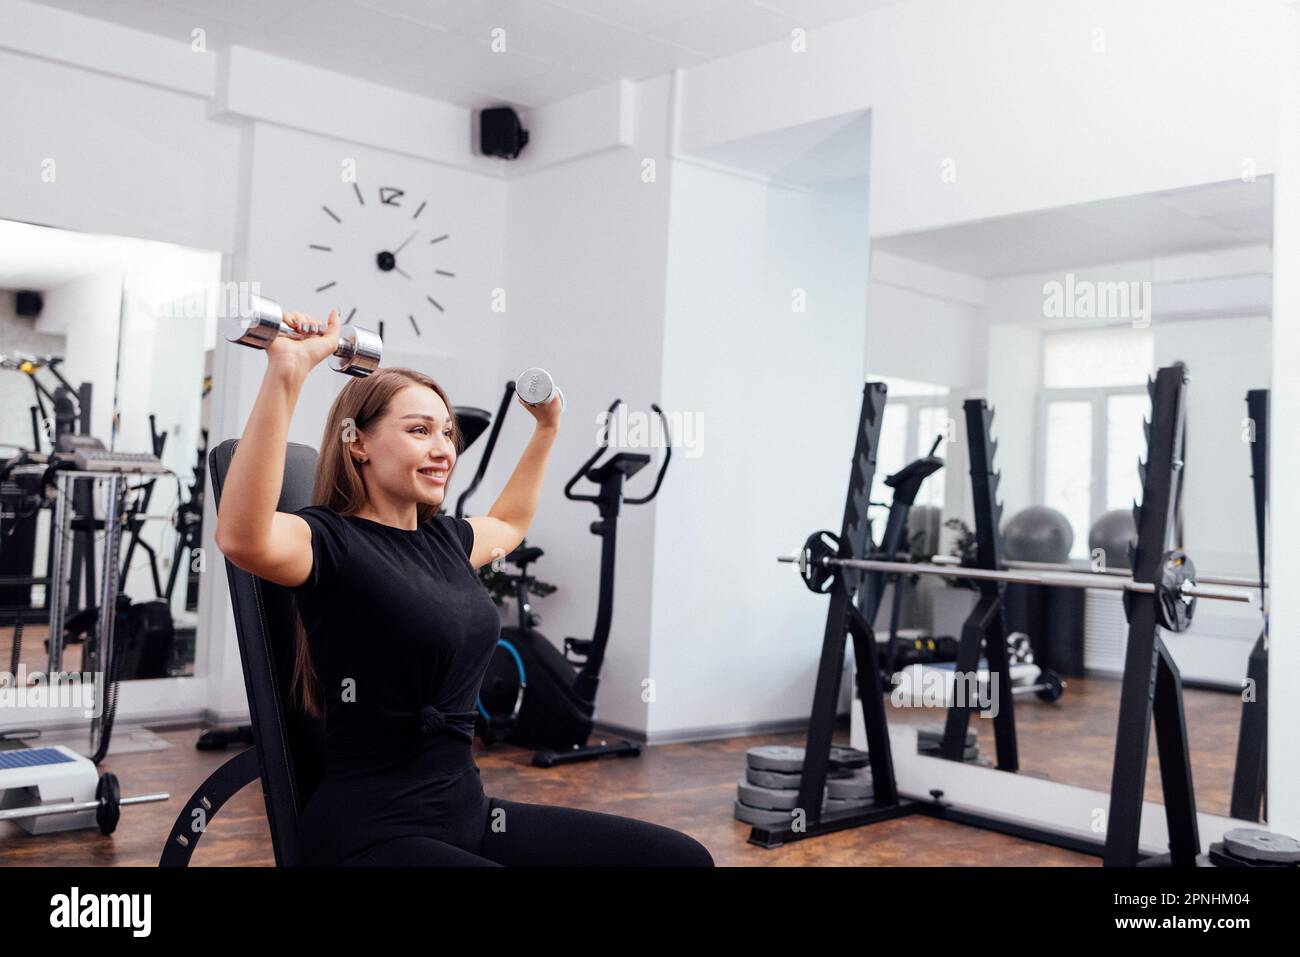 La jeune femme blondy sportive en noir fait de la dumbbell presse sur le banc universel incliné à la salle de gym ou au studio de fitness. Pompage des muscles de b Banque D'Images